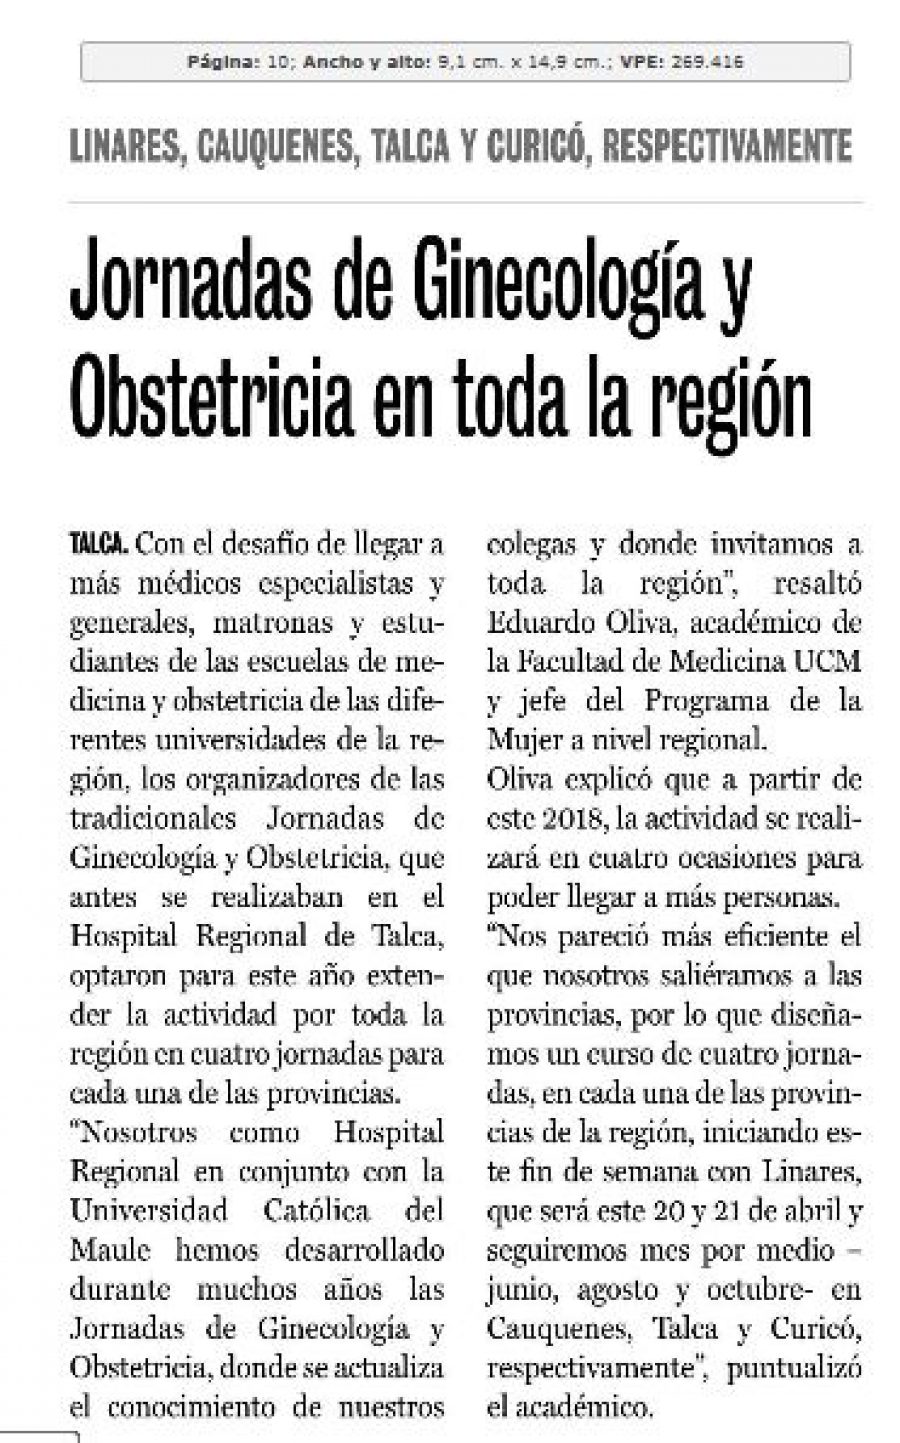 21 de abril en Diario La Prensa: “Jornadas de Ginecología y Obstetricia en toda la región”